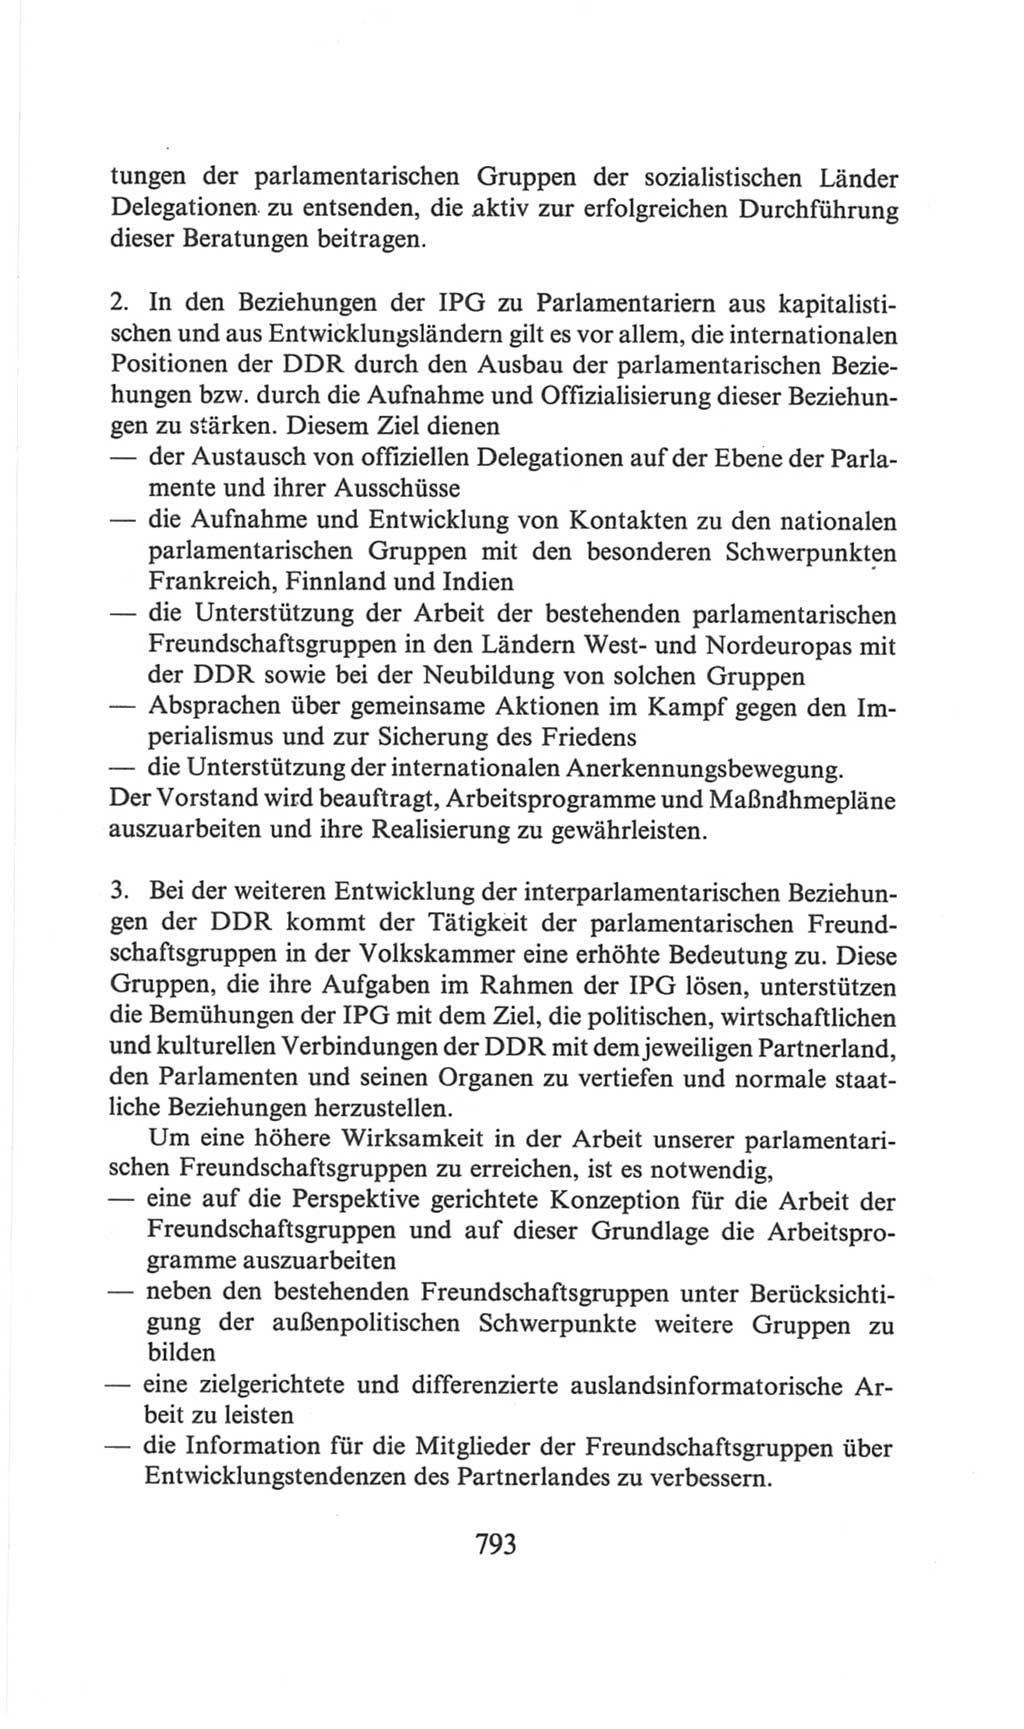 Volkskammer (VK) der Deutschen Demokratischen Republik (DDR), 6. Wahlperiode 1971-1976, Seite 793 (VK. DDR 6. WP. 1971-1976, S. 793)